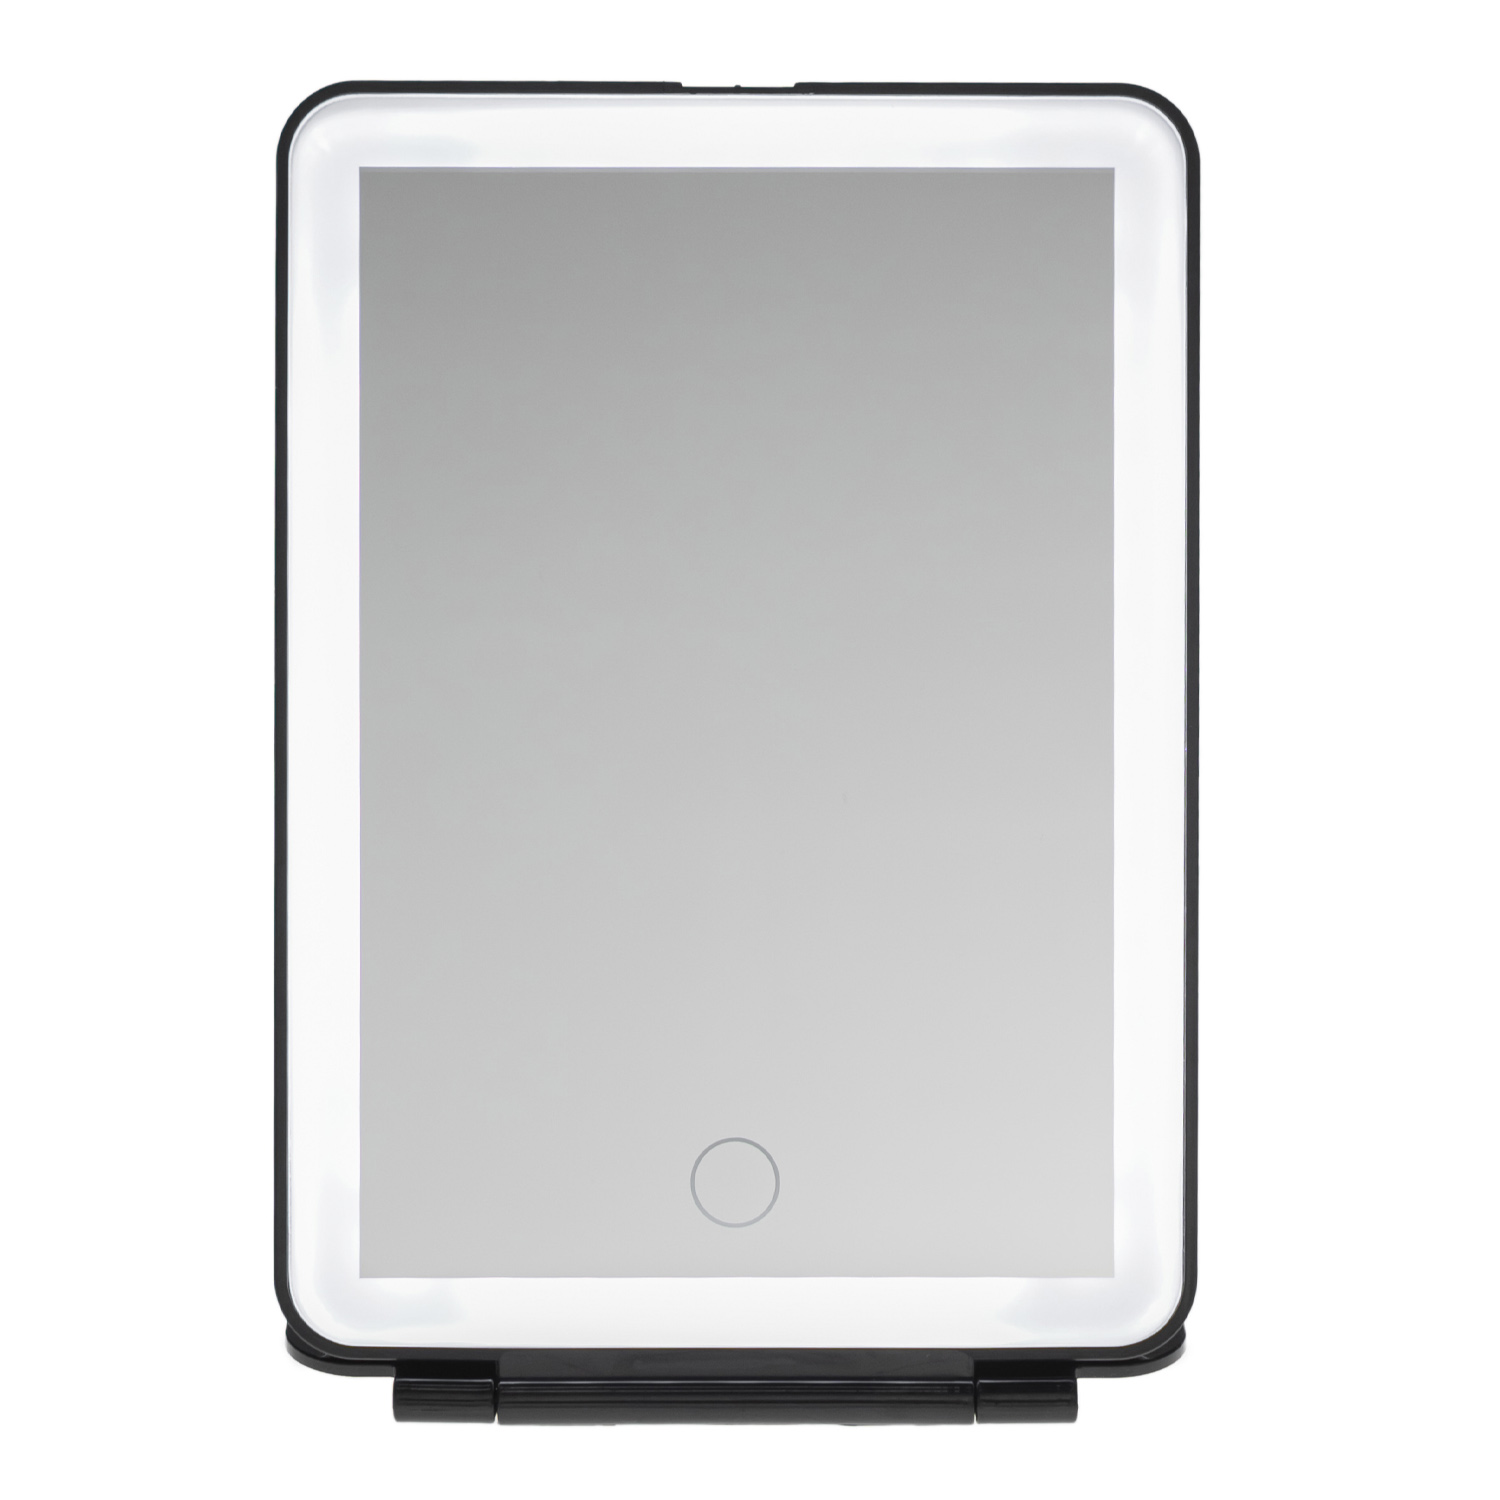 Зеркало косметическое CleverCare в форме планшета с LED подсветкой монохром цвет черный - фото 1